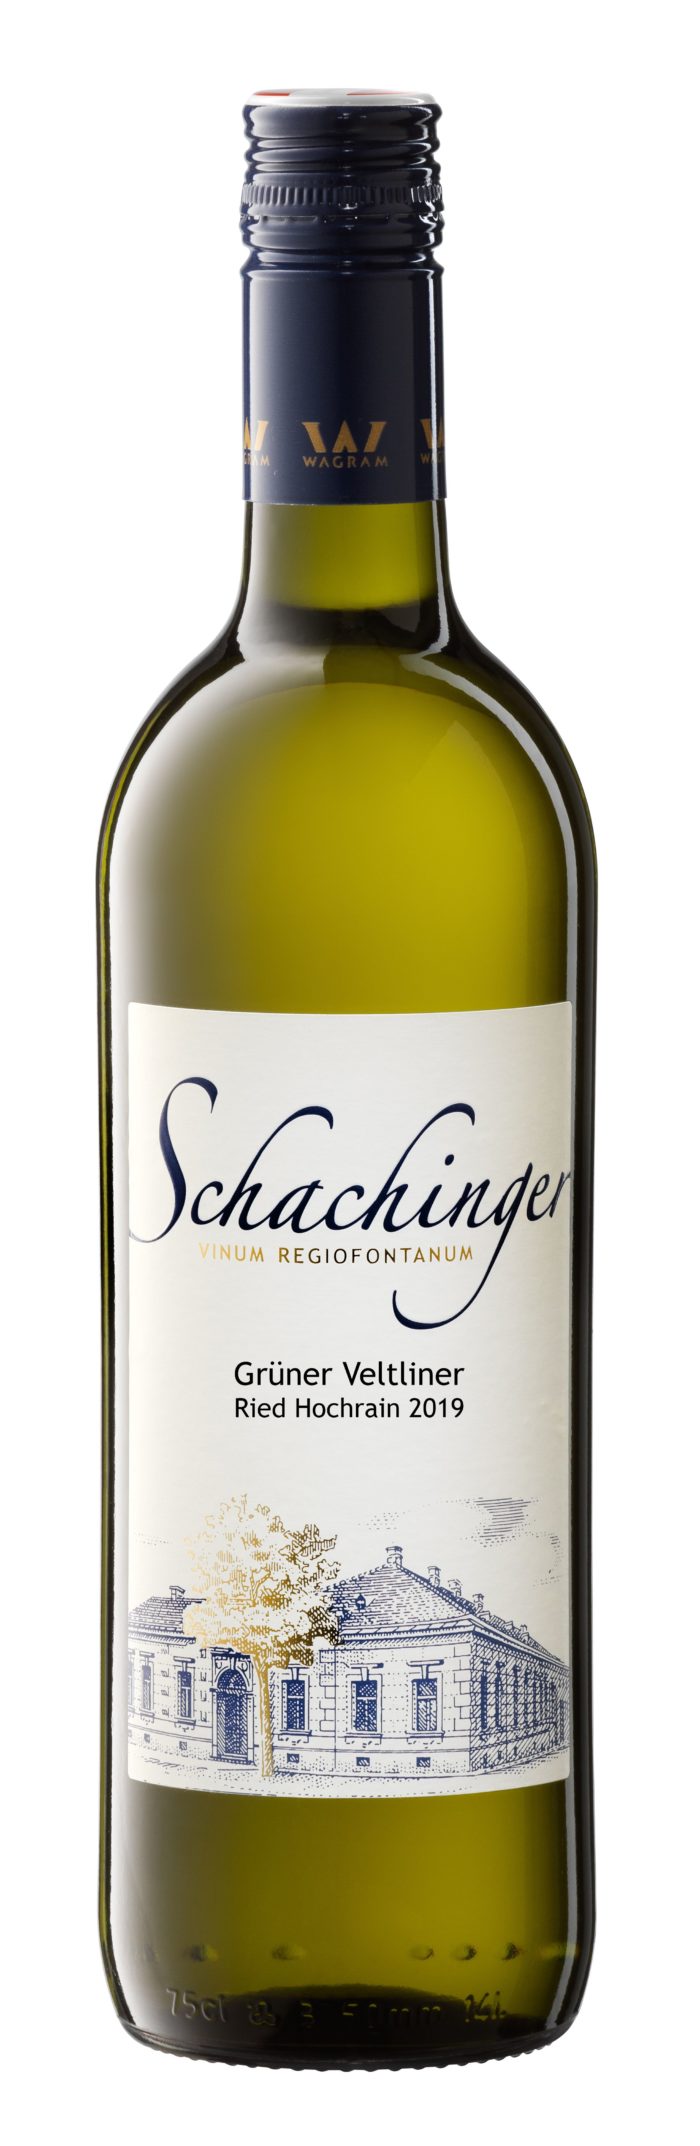 Grüner Veltliner Ried Hochrain 2019 Weingut Schachinger Königsbrunn am Wagram